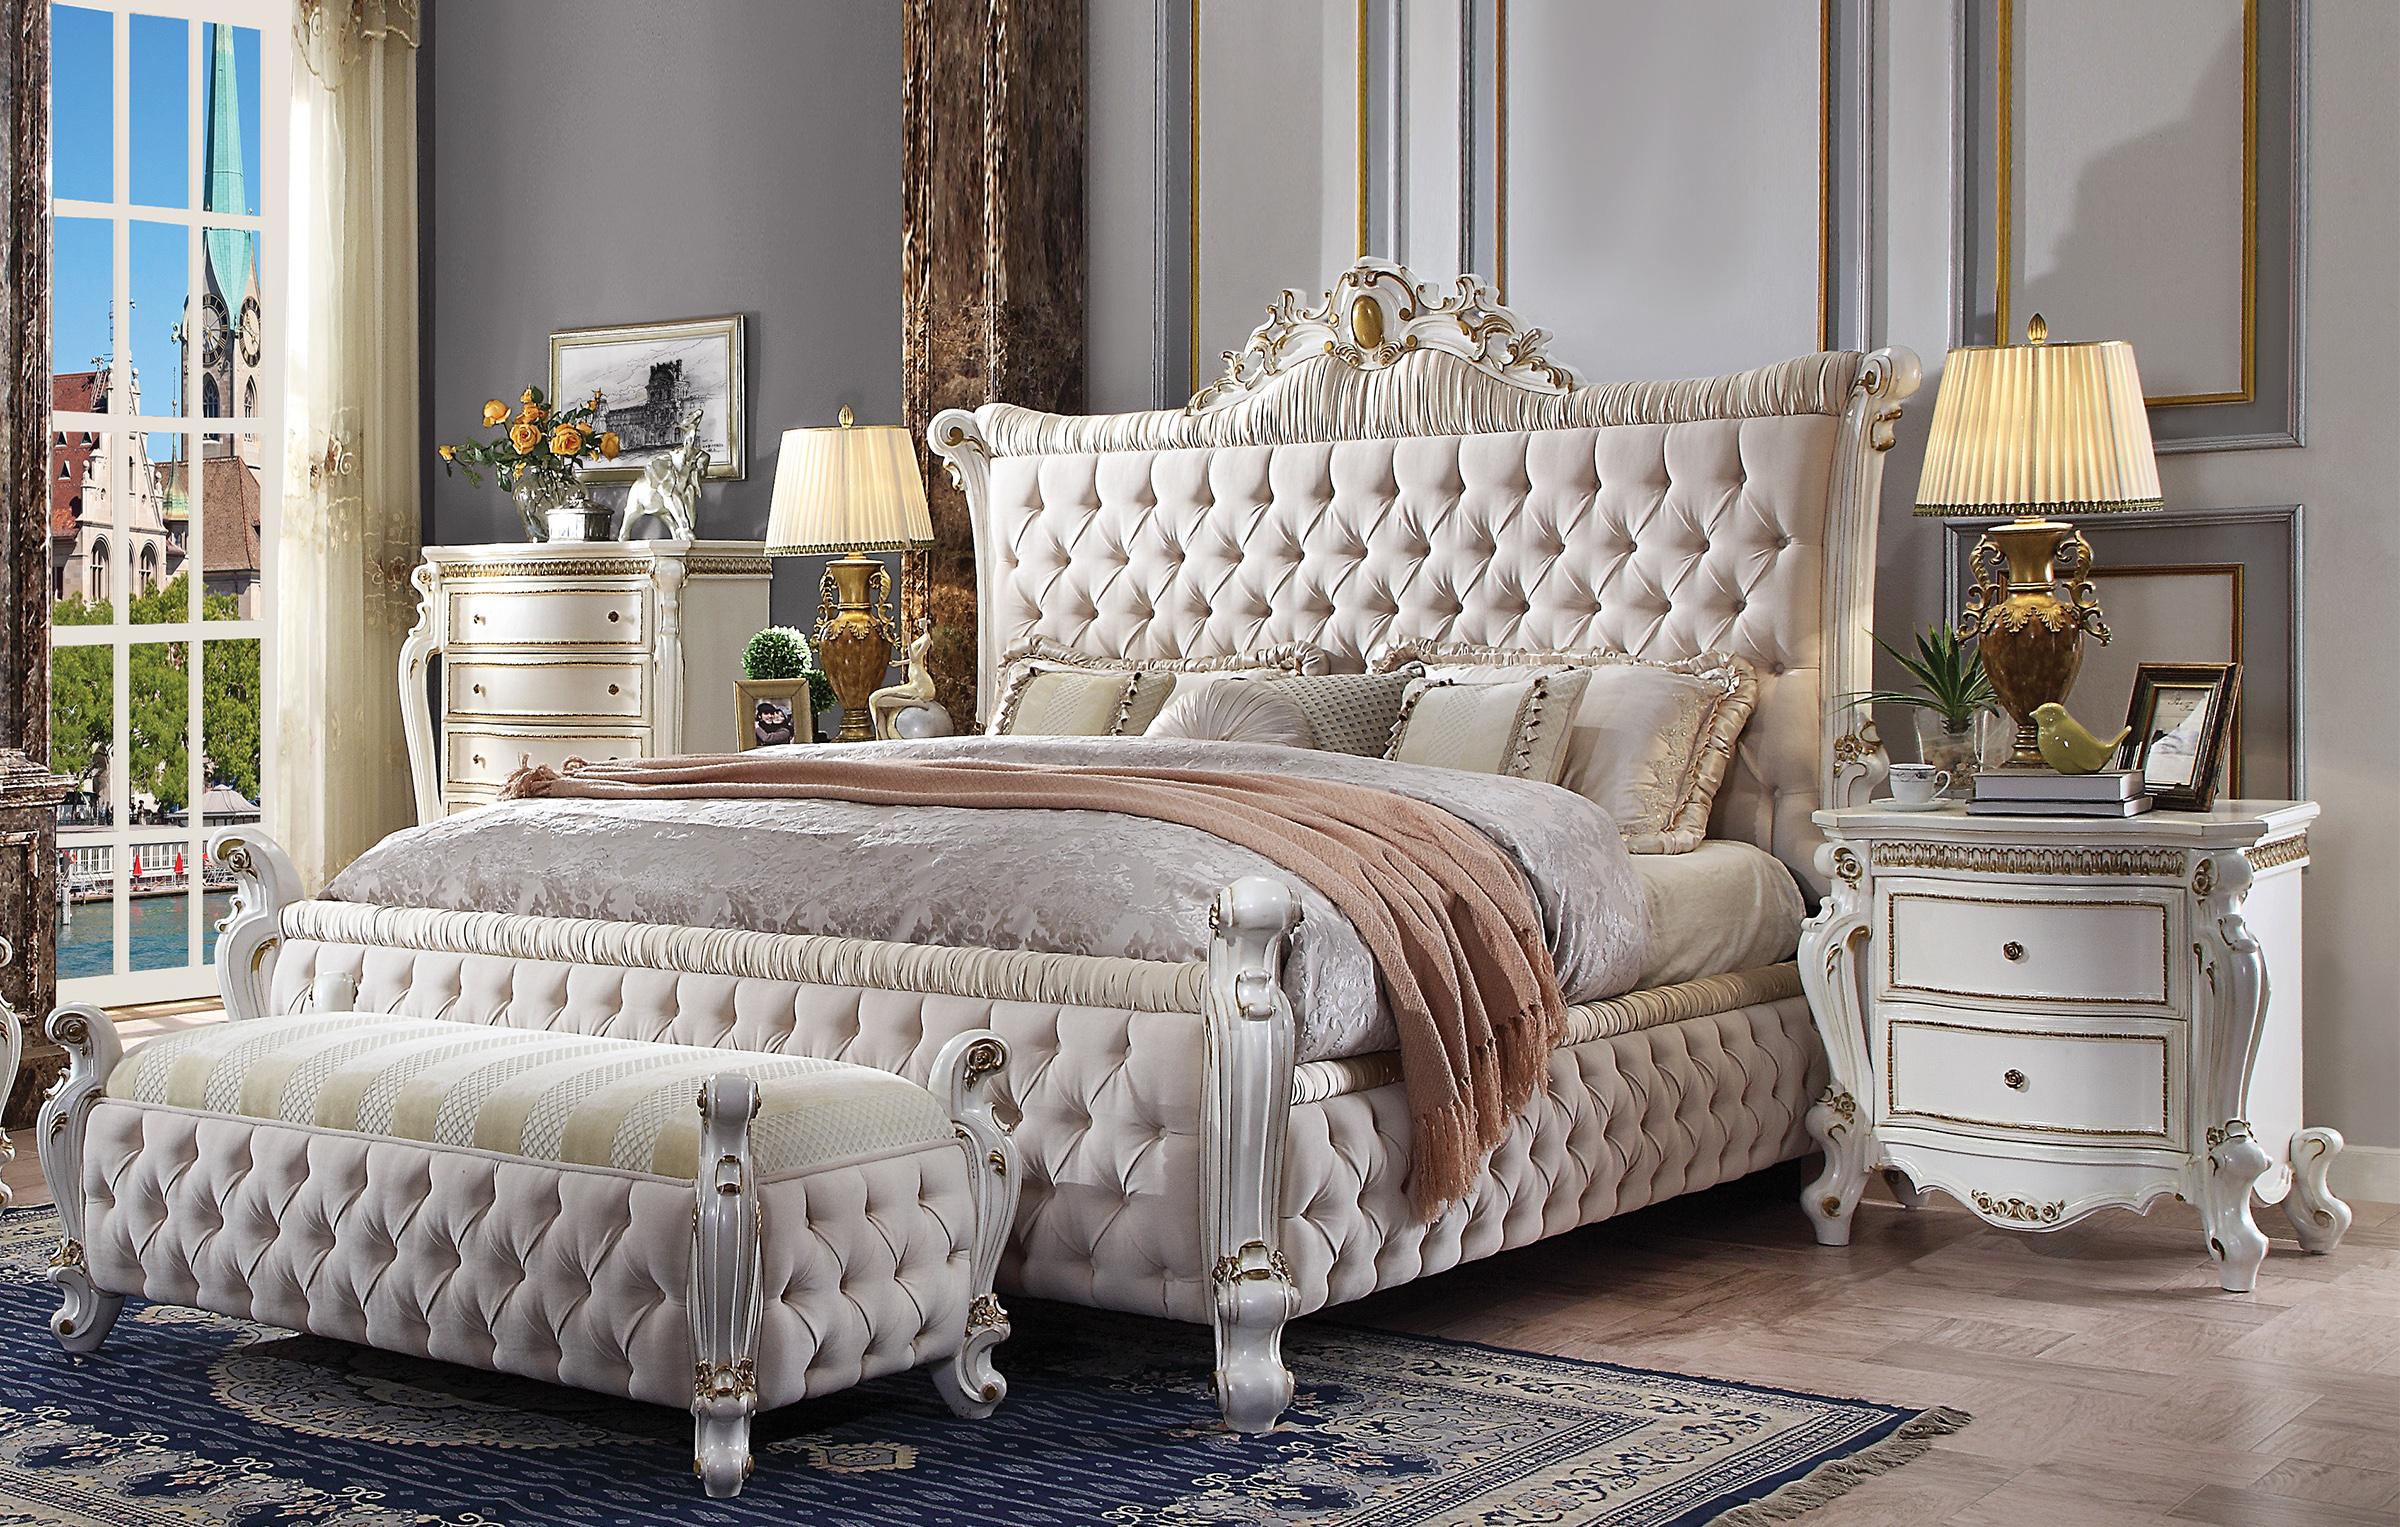 

    
Endicott King Panel Upholstered Standard Bedroom Set 3 Pcs Classic
